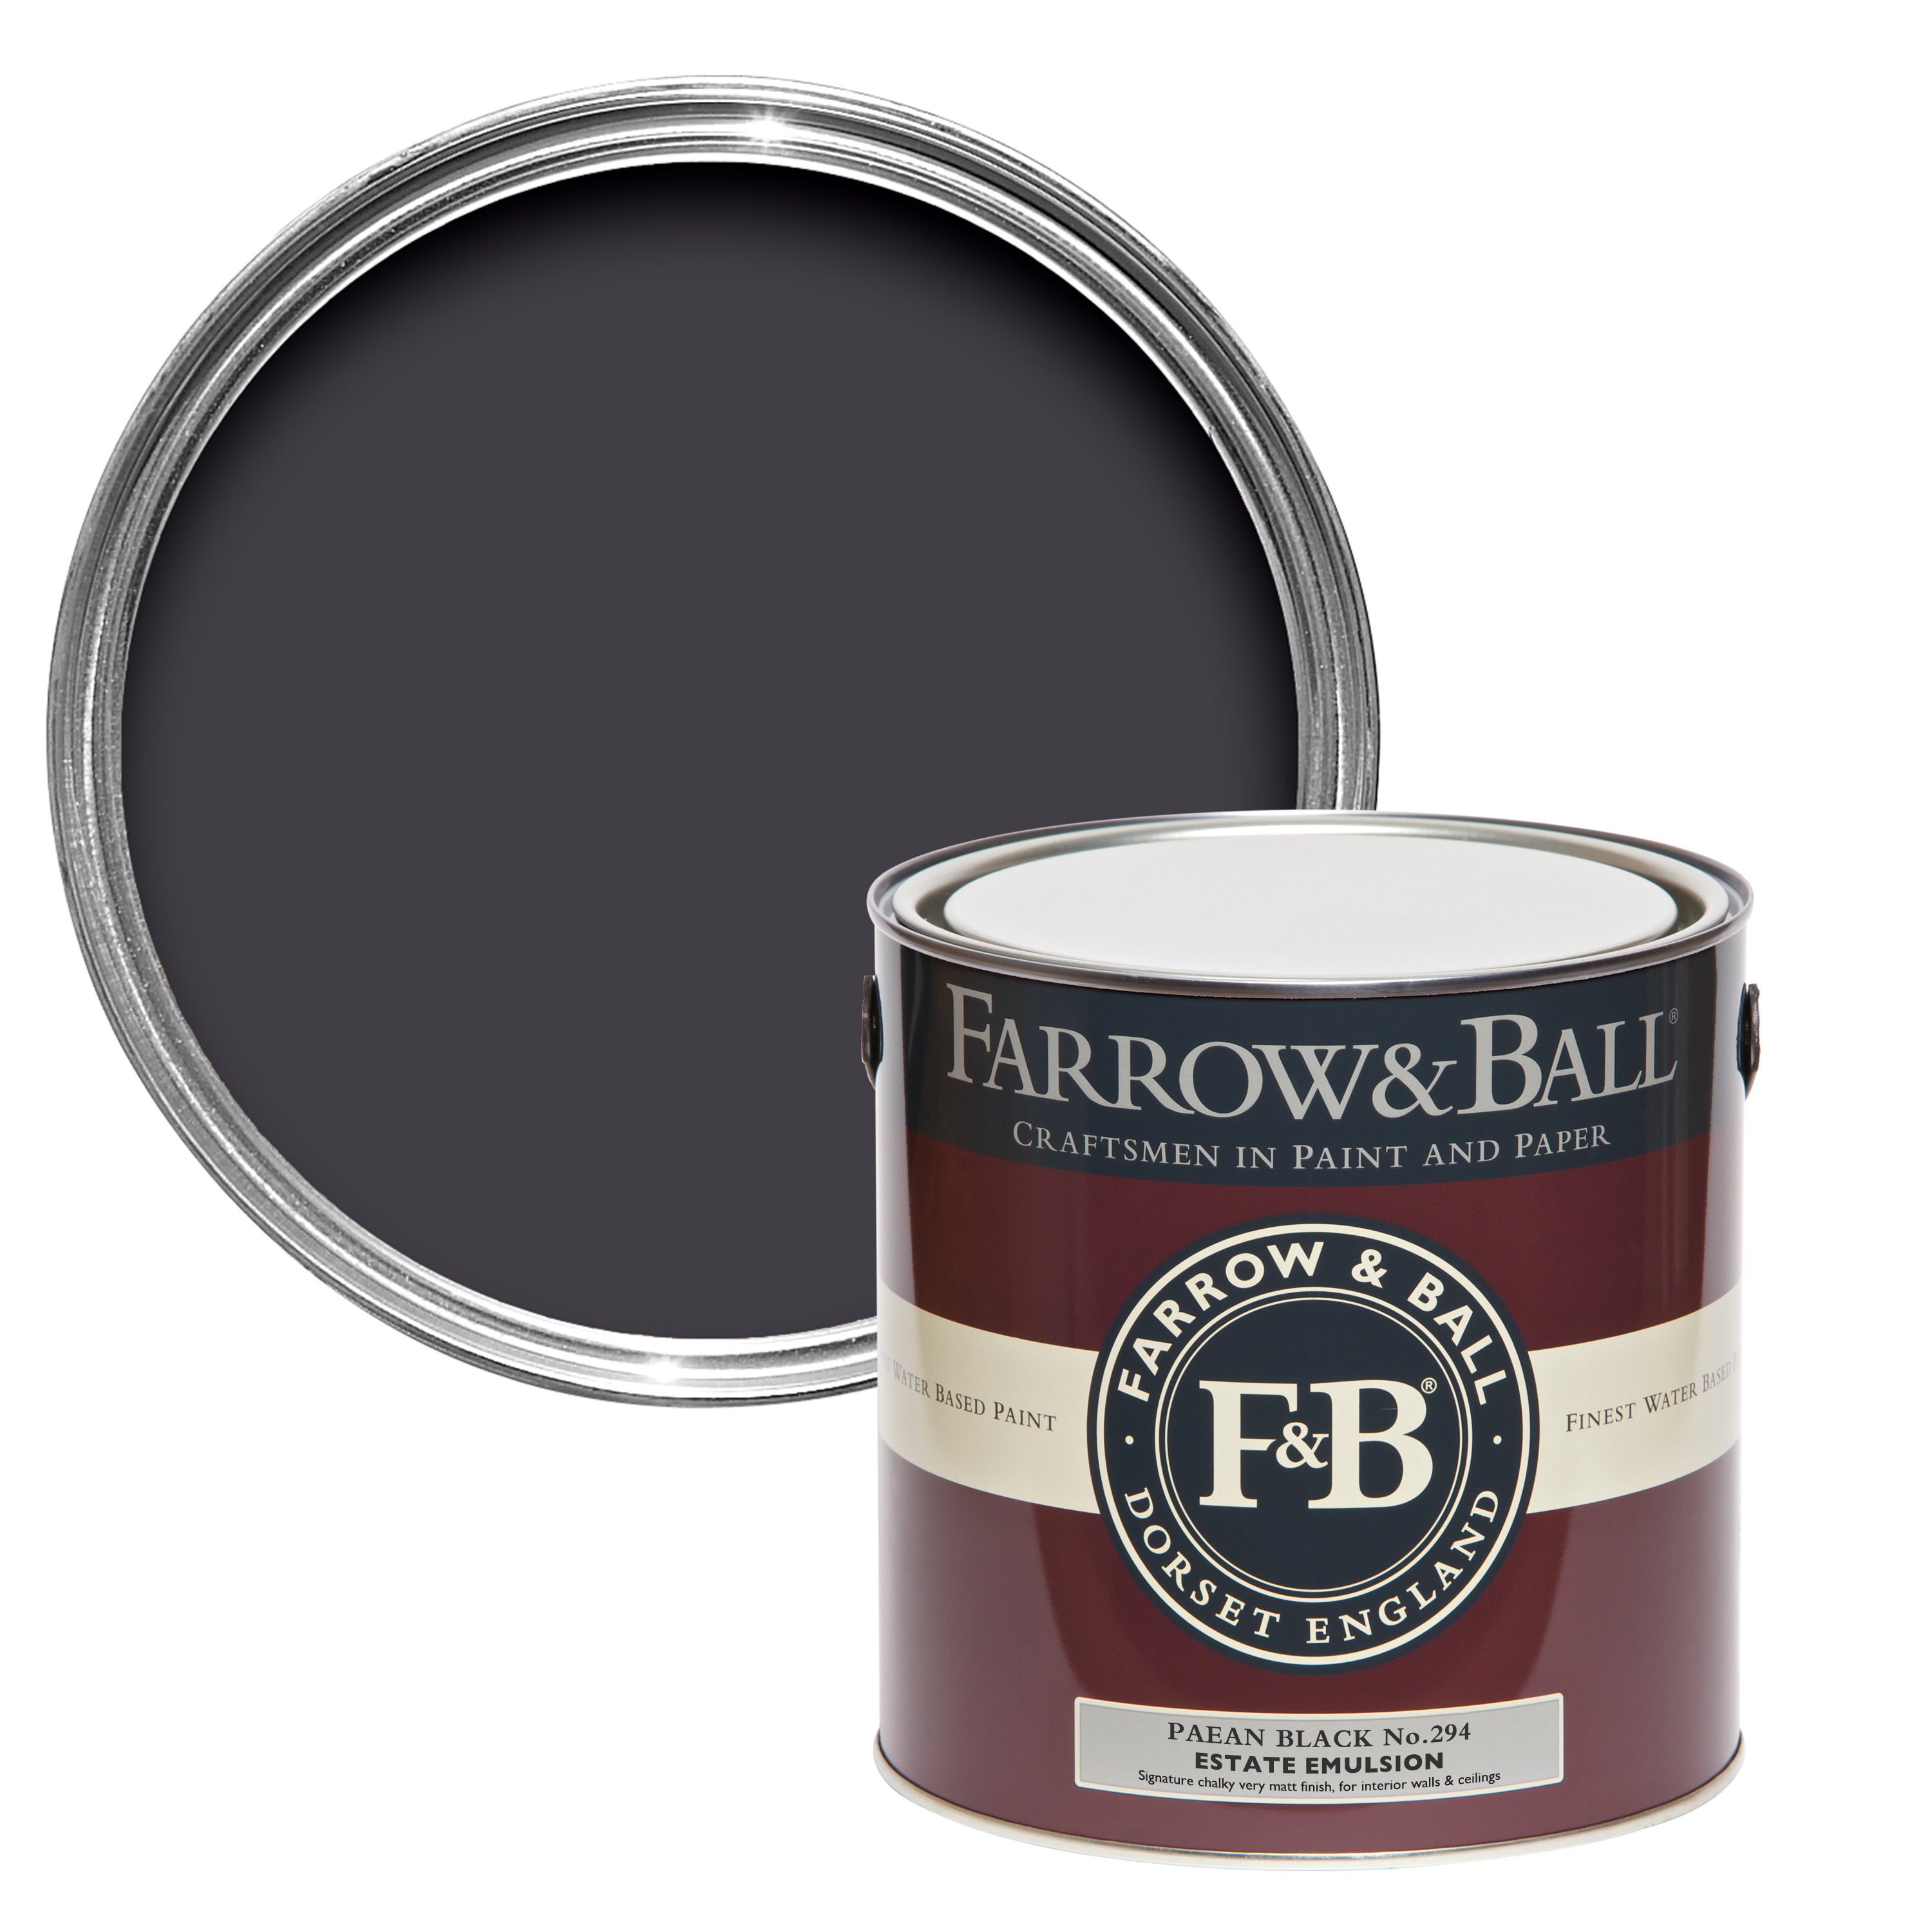 Paean Black No 294 | Farrow & Ball